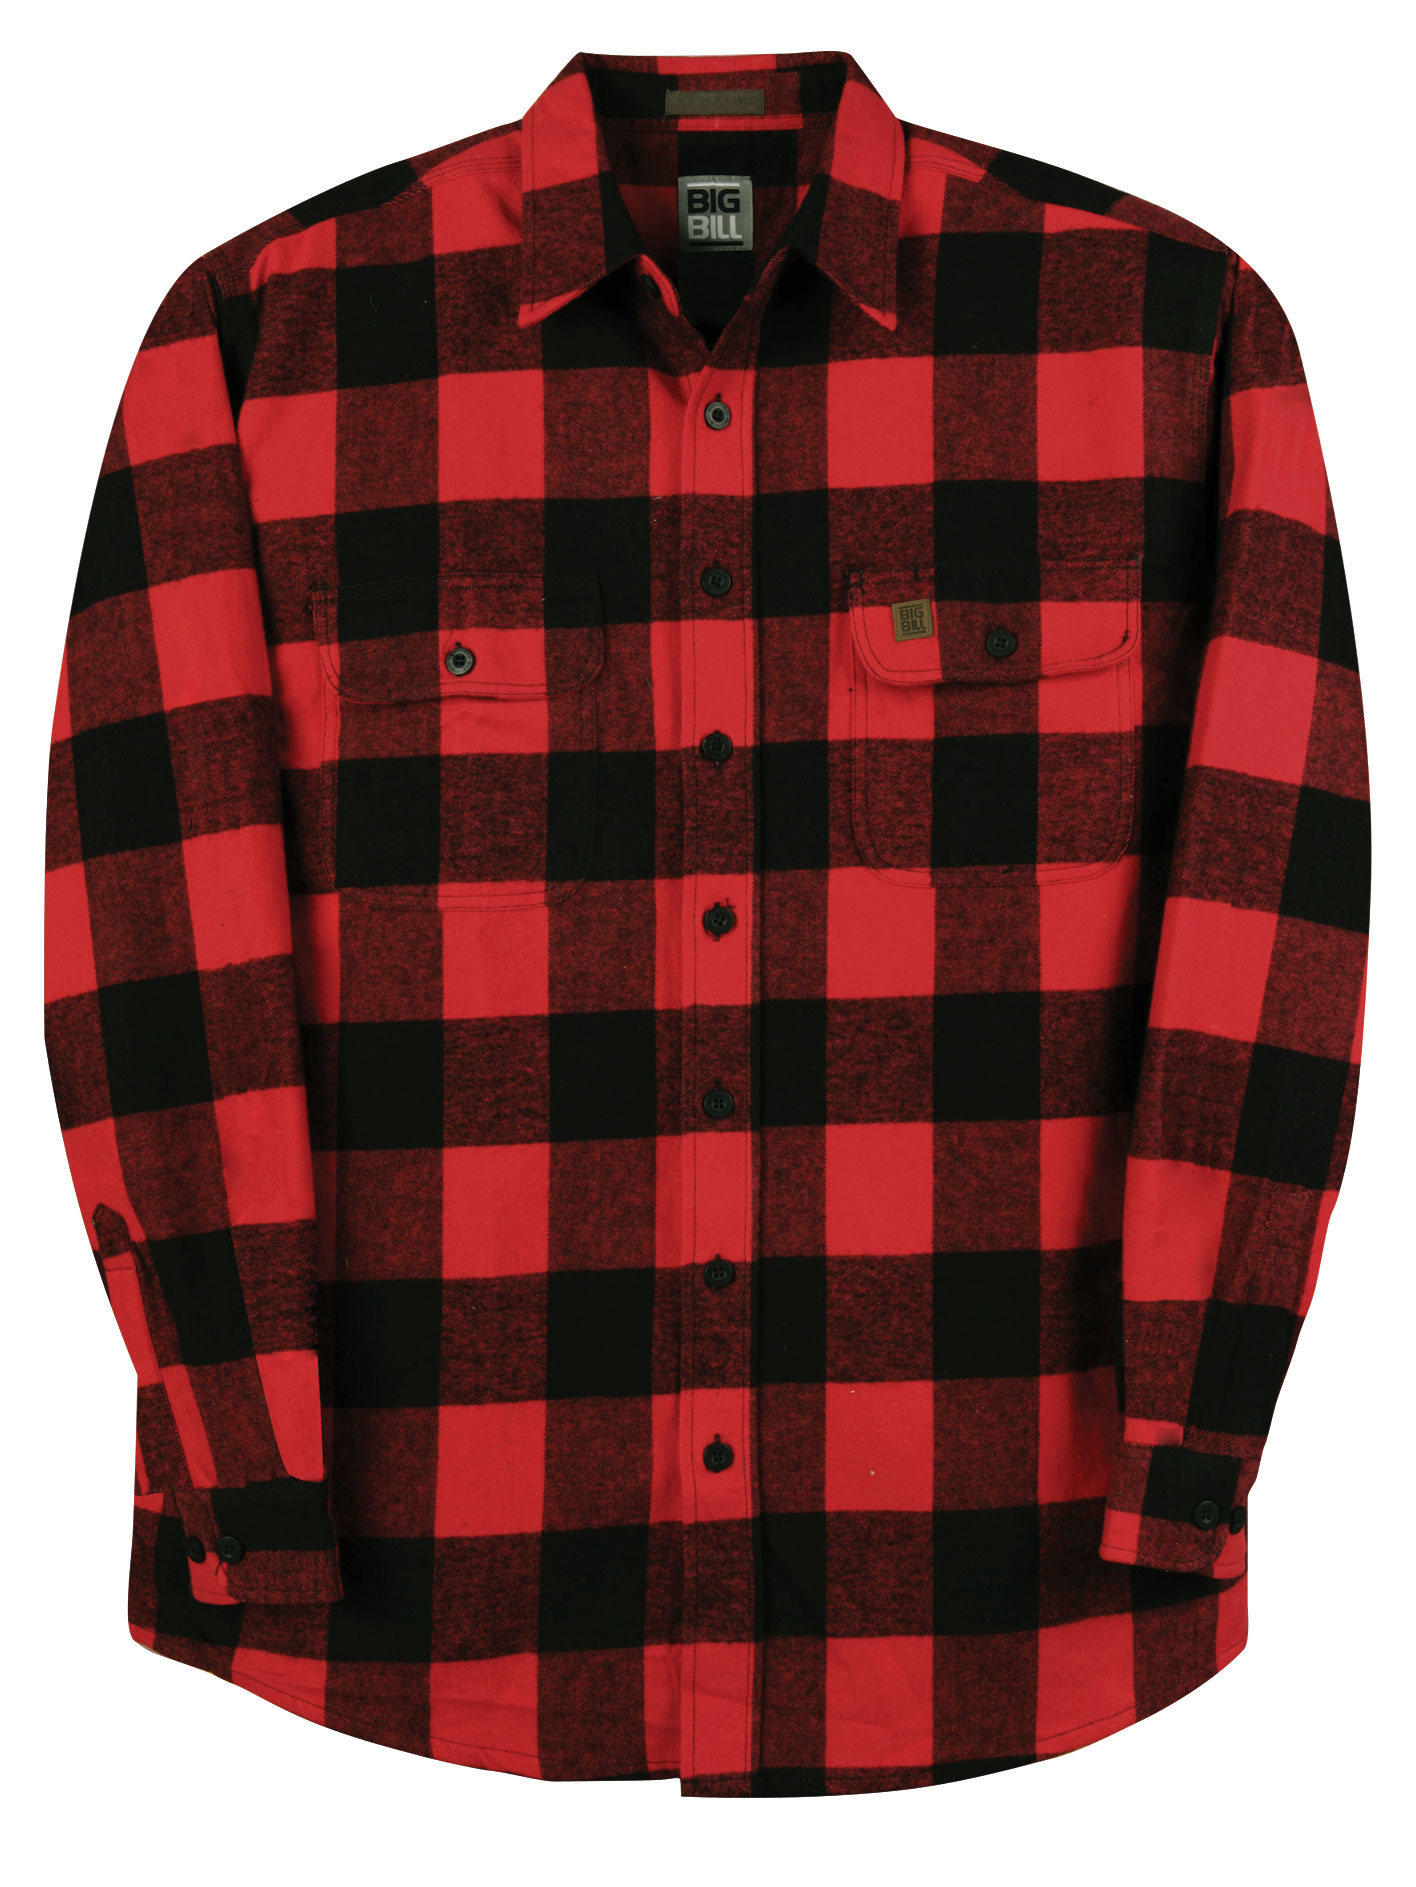 lumberjack shirt canada